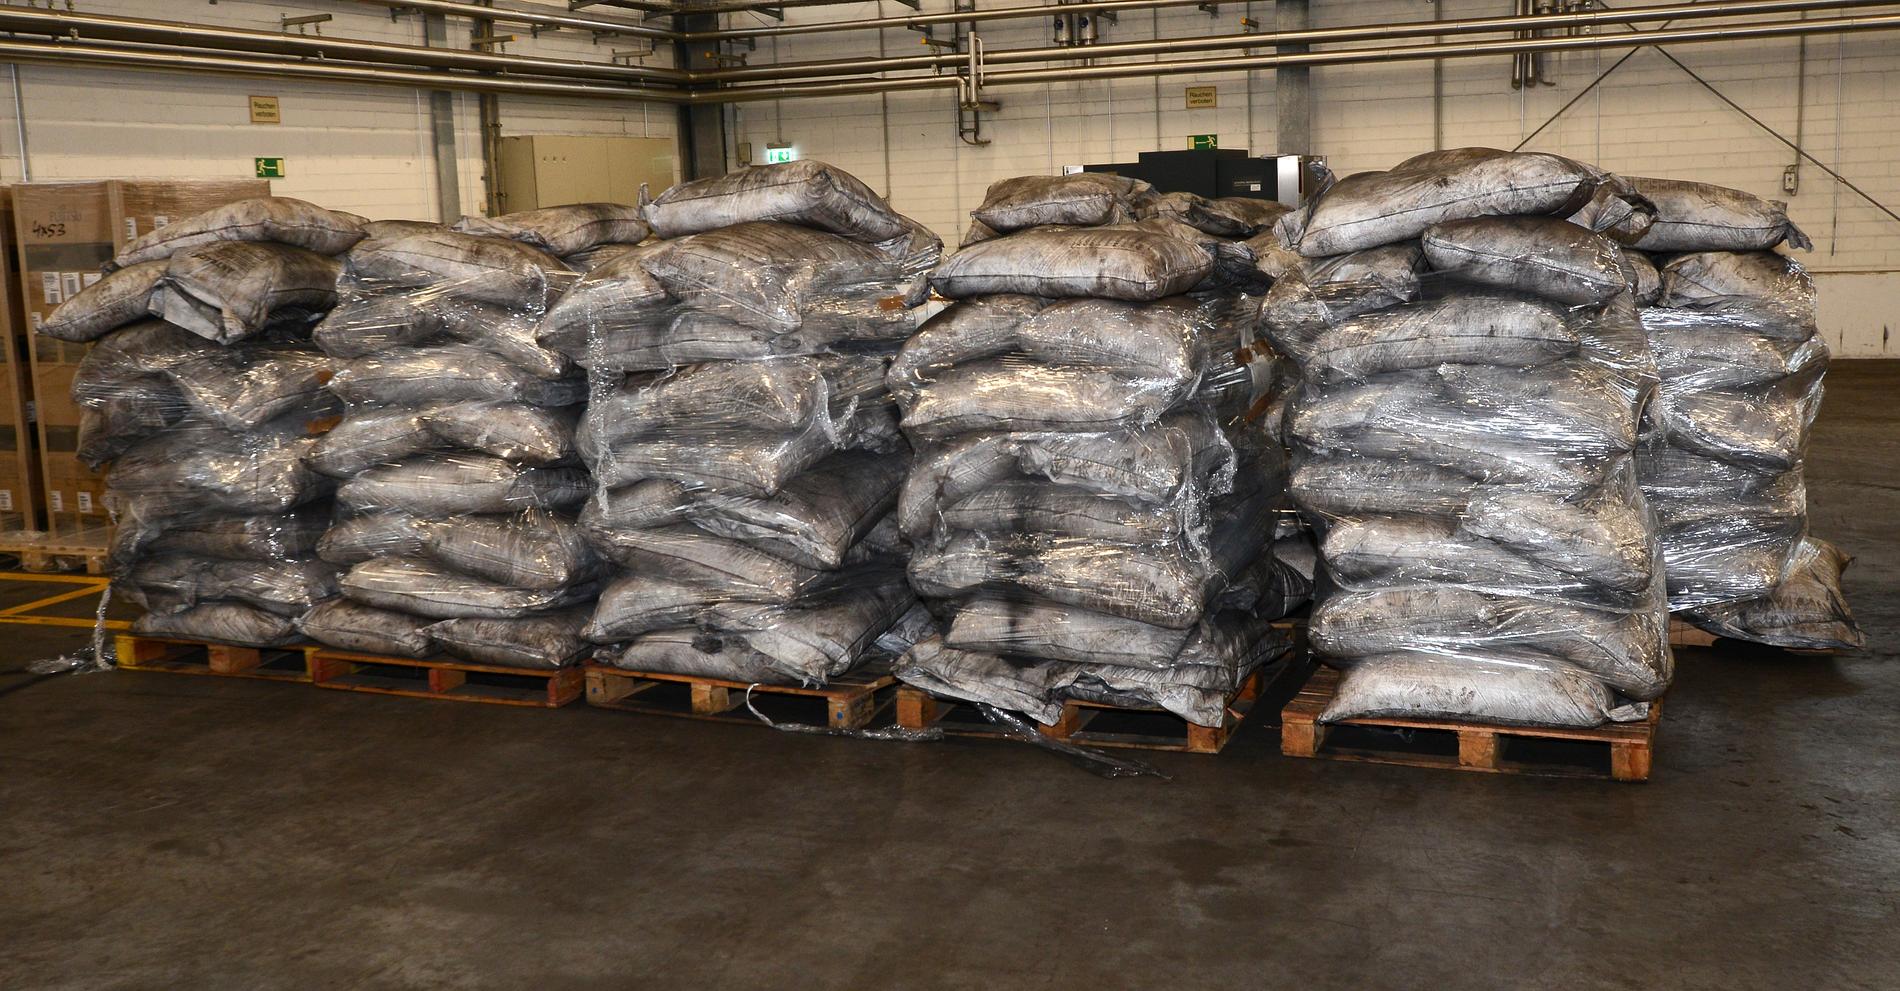 Bland 500 säckar med antracitkol från Colombia hittade Tullverket sex säckar som innehöll kolpulver uppblandat med kokain.